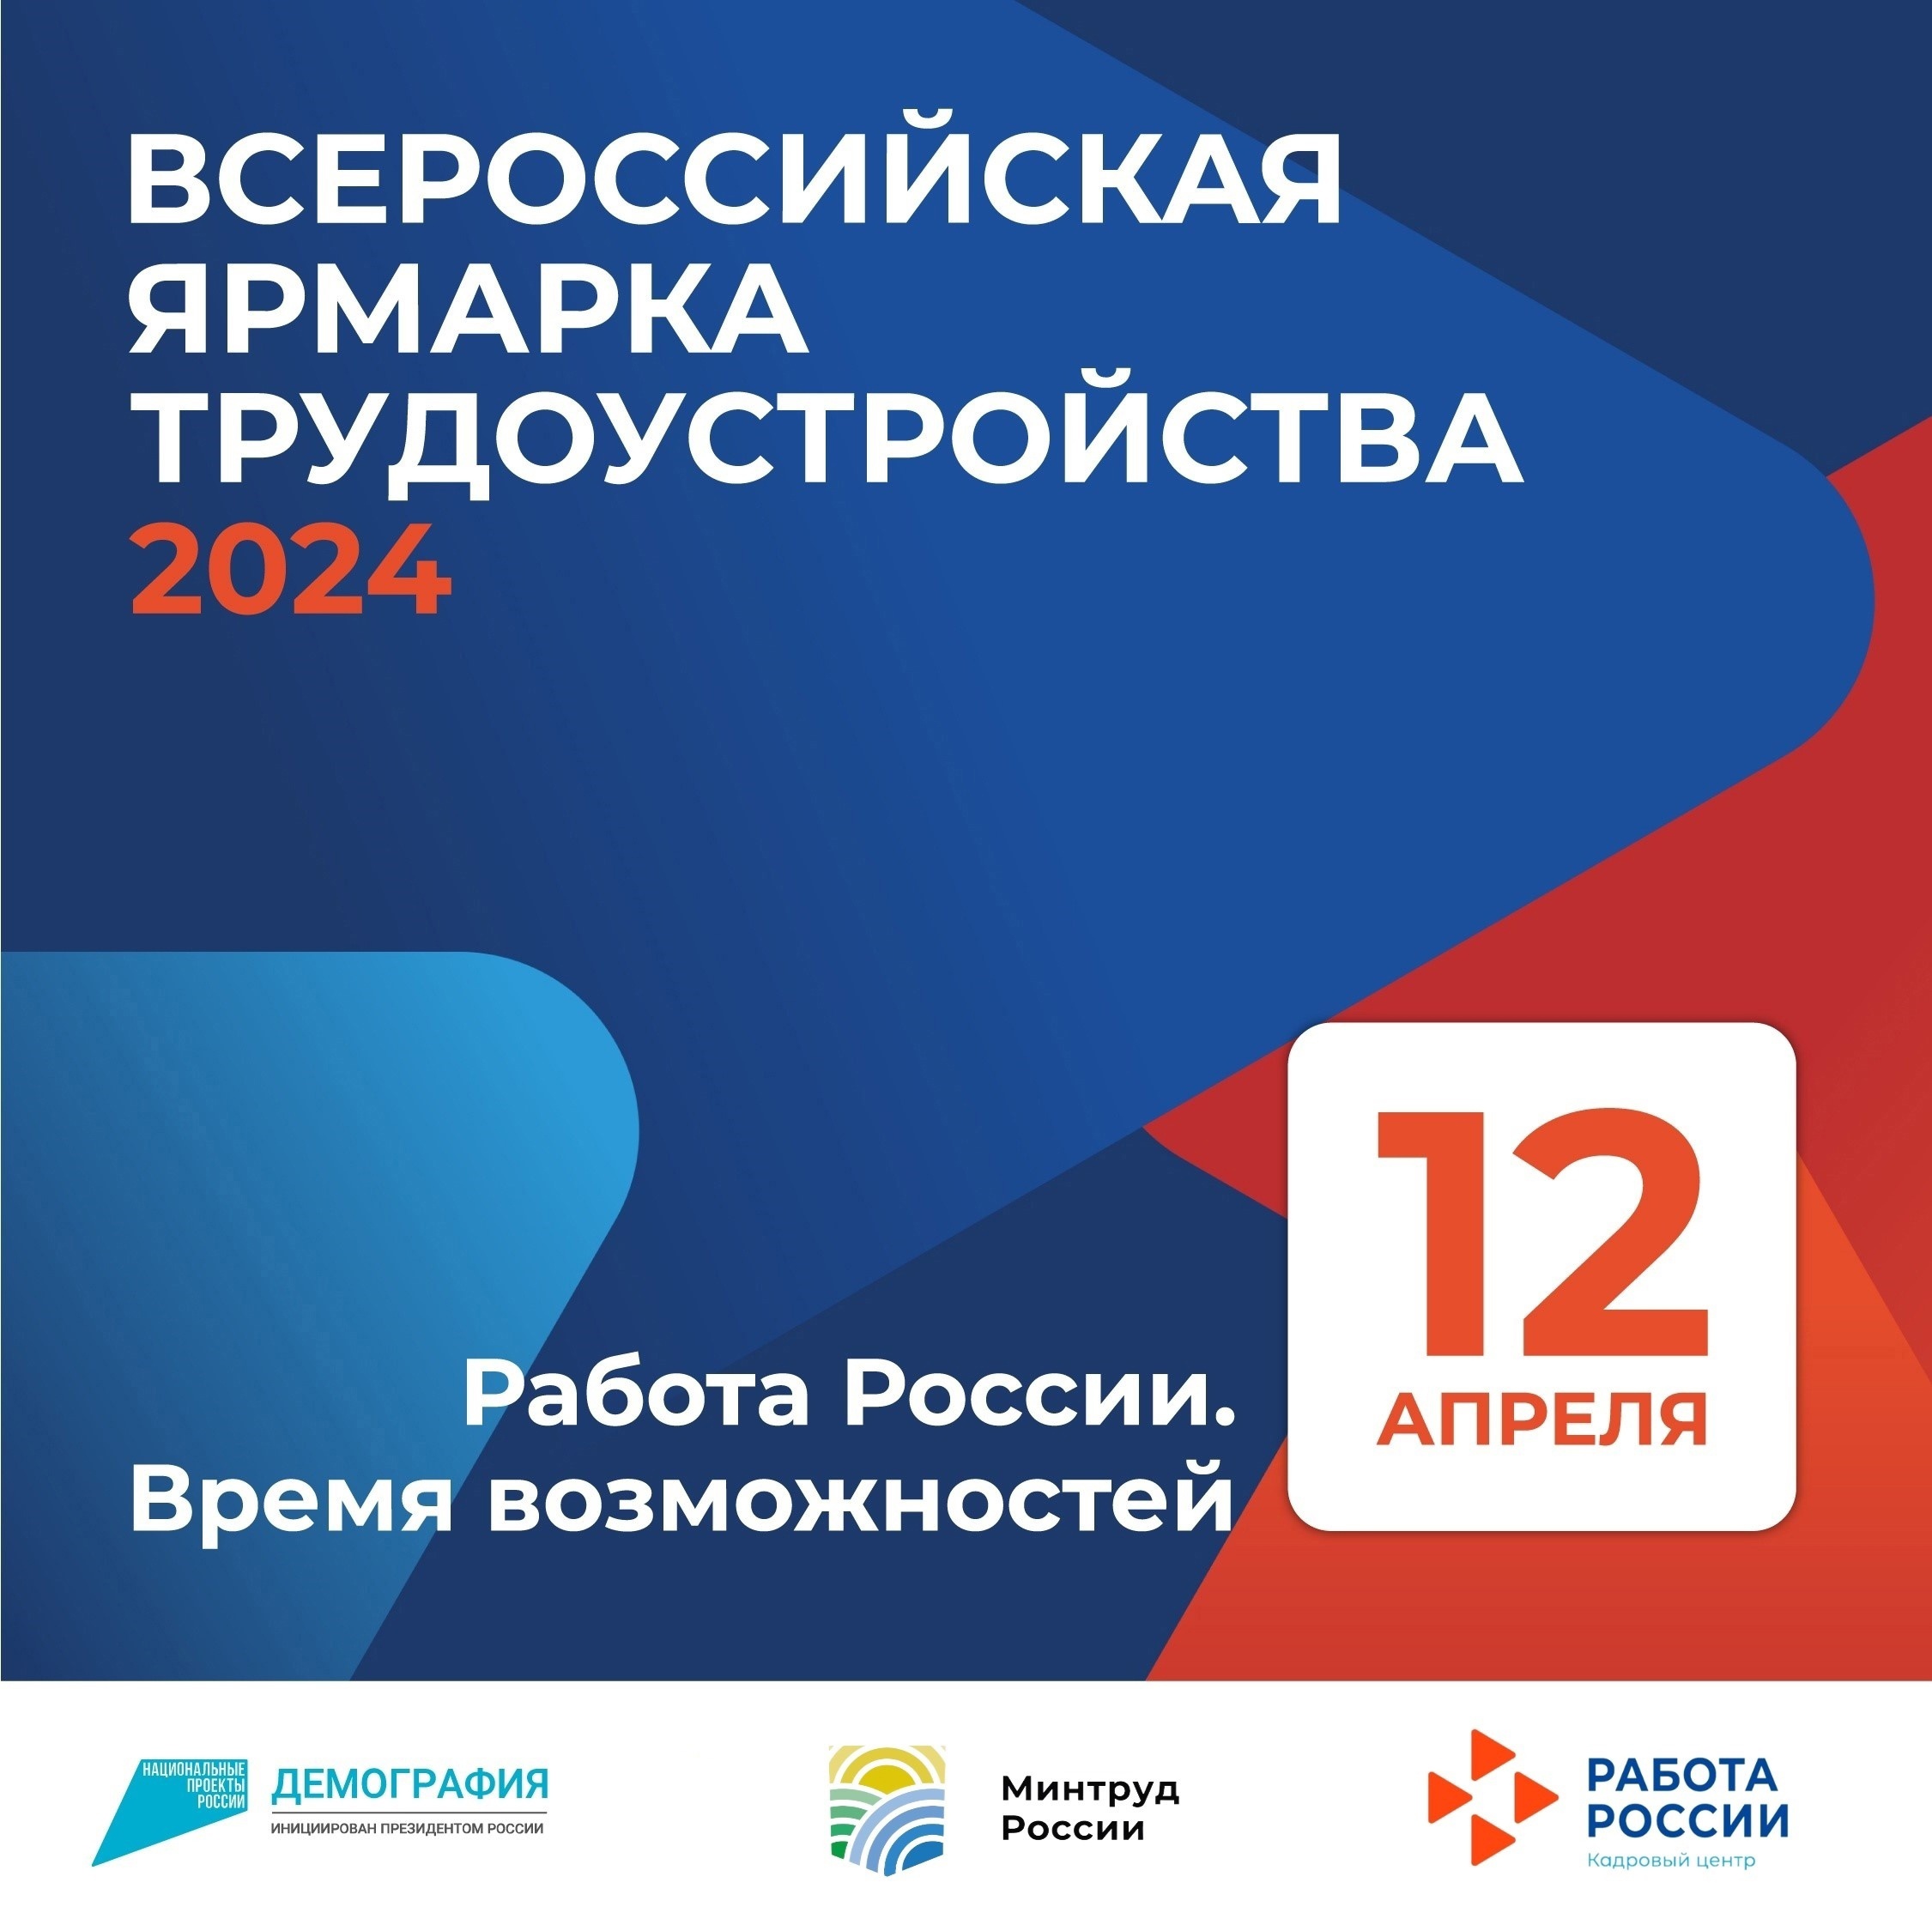 Всероссийская ярмарка трудоустройства пройдет 12 апреля.